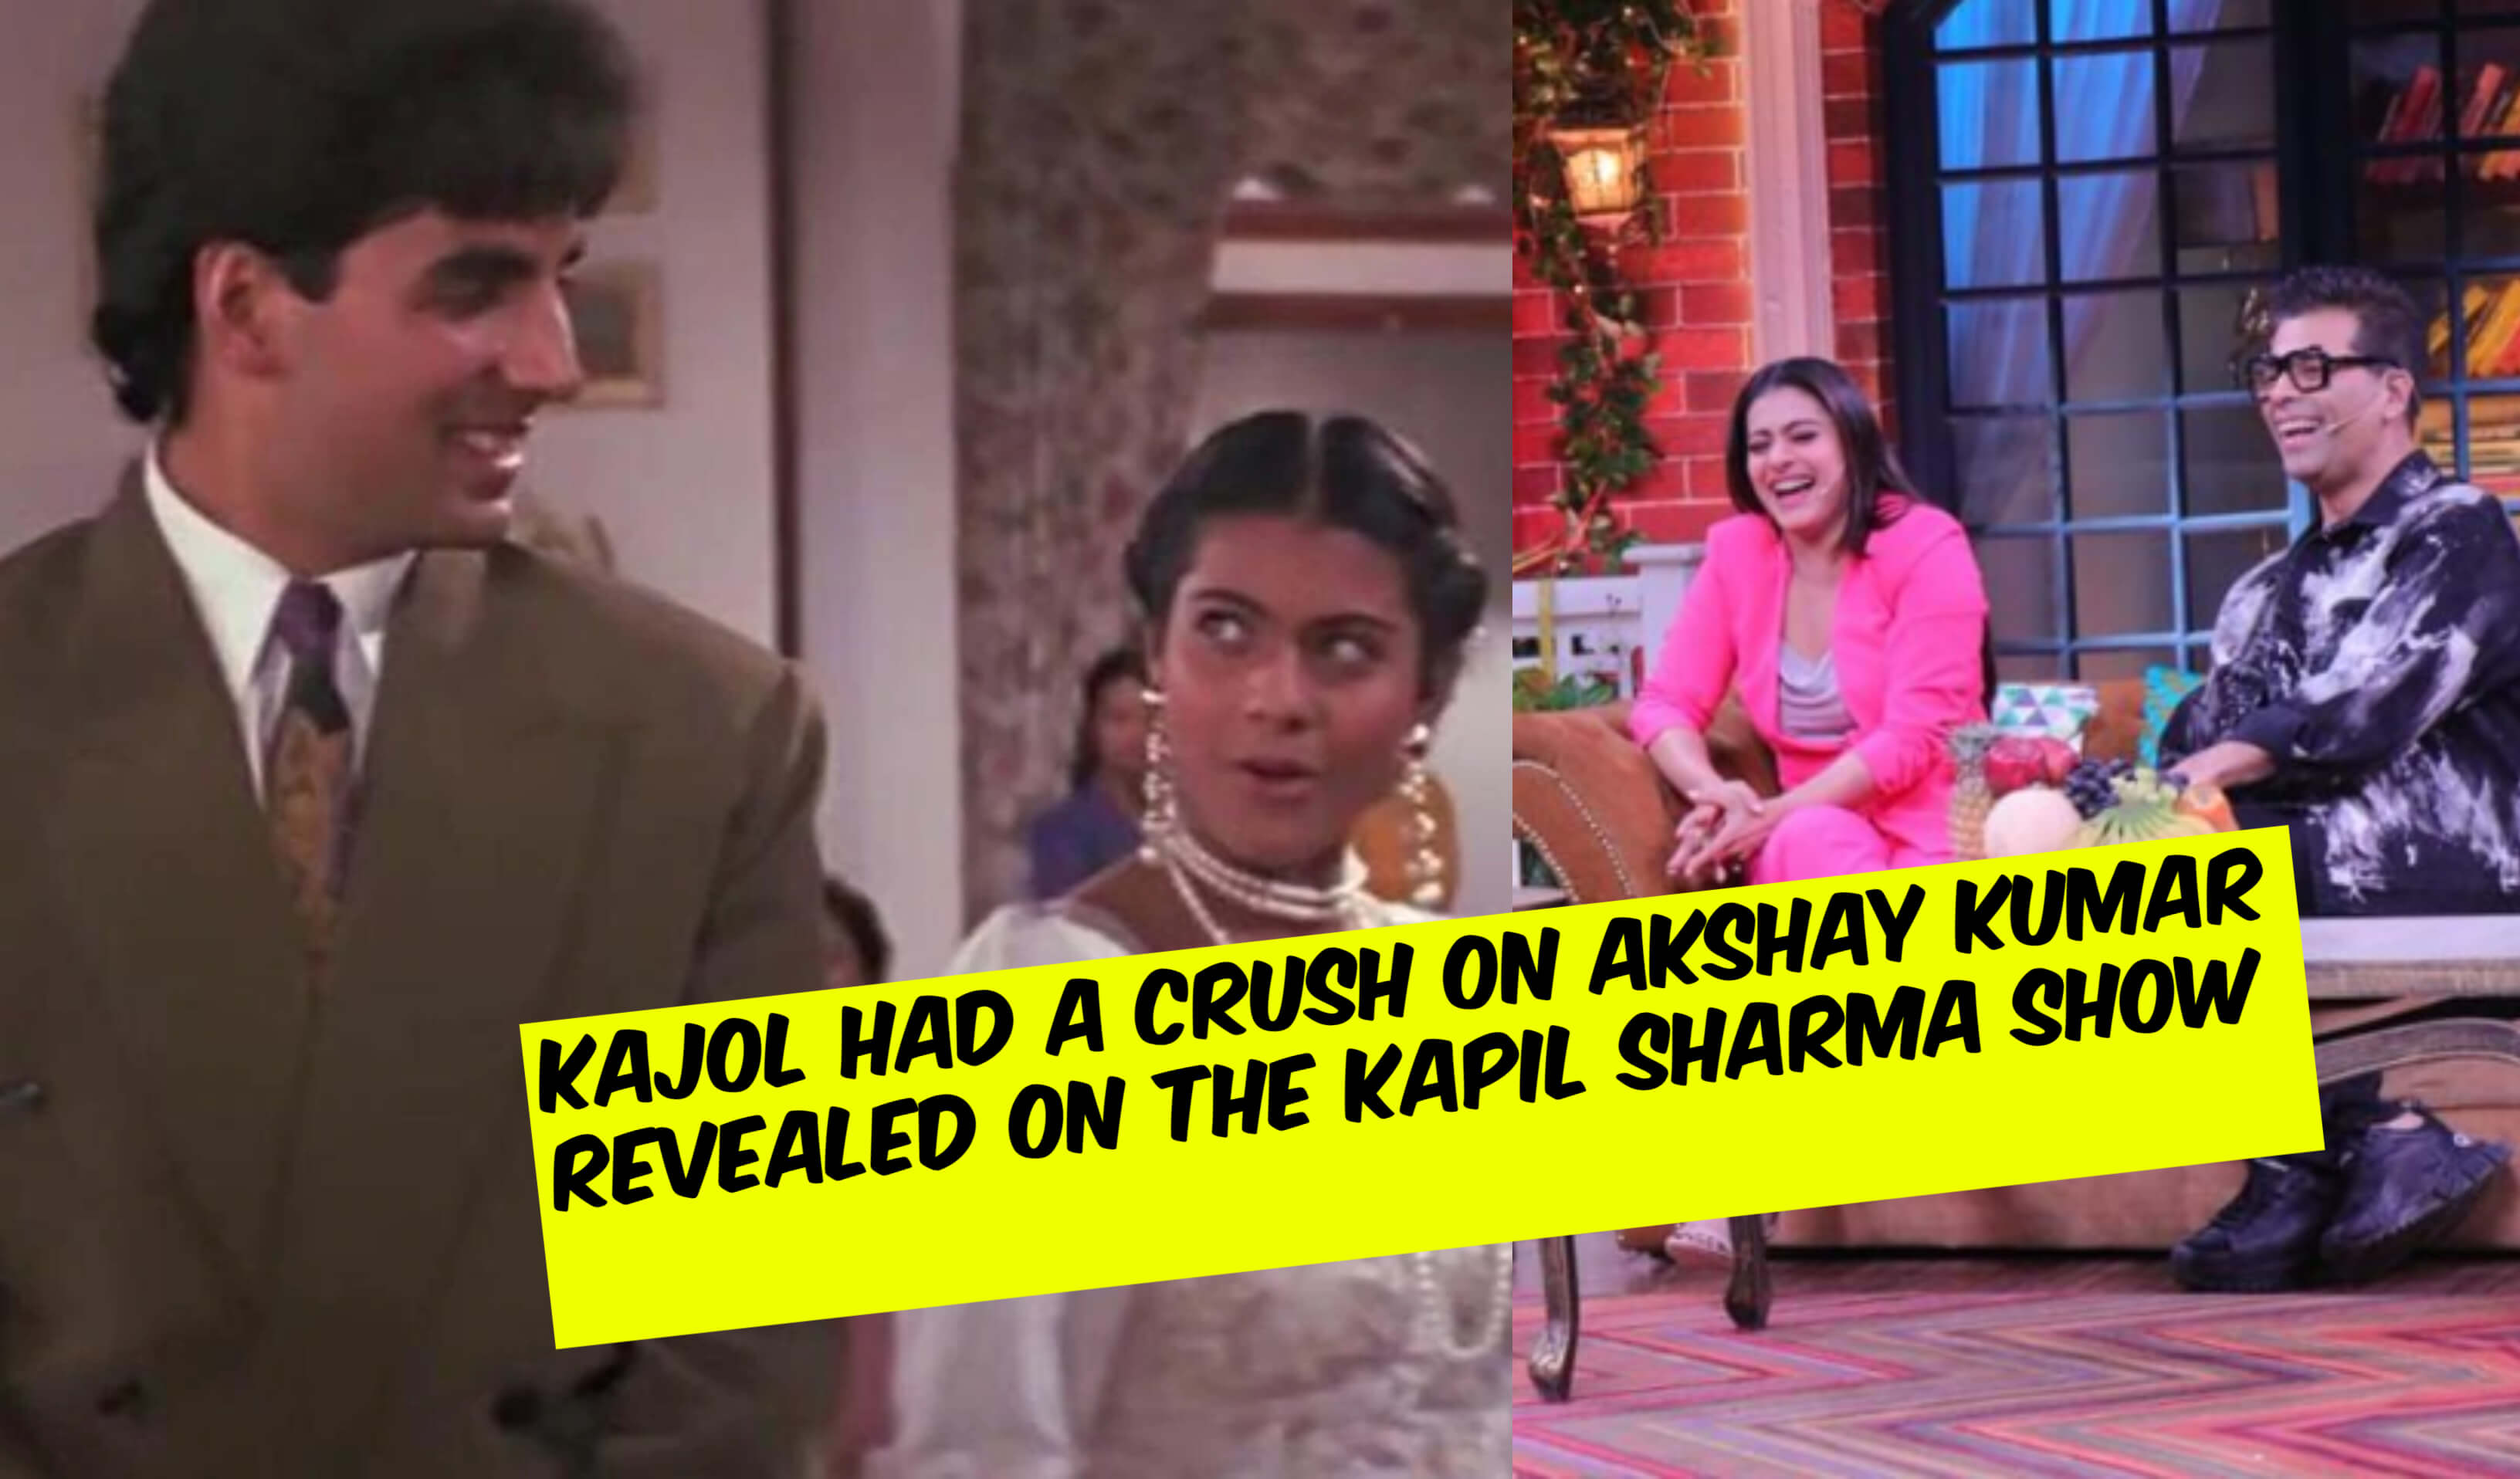 Kajol Had a Crush on Akshay Kumar, Karan Johar Reveals on The Kapil Sharma Show